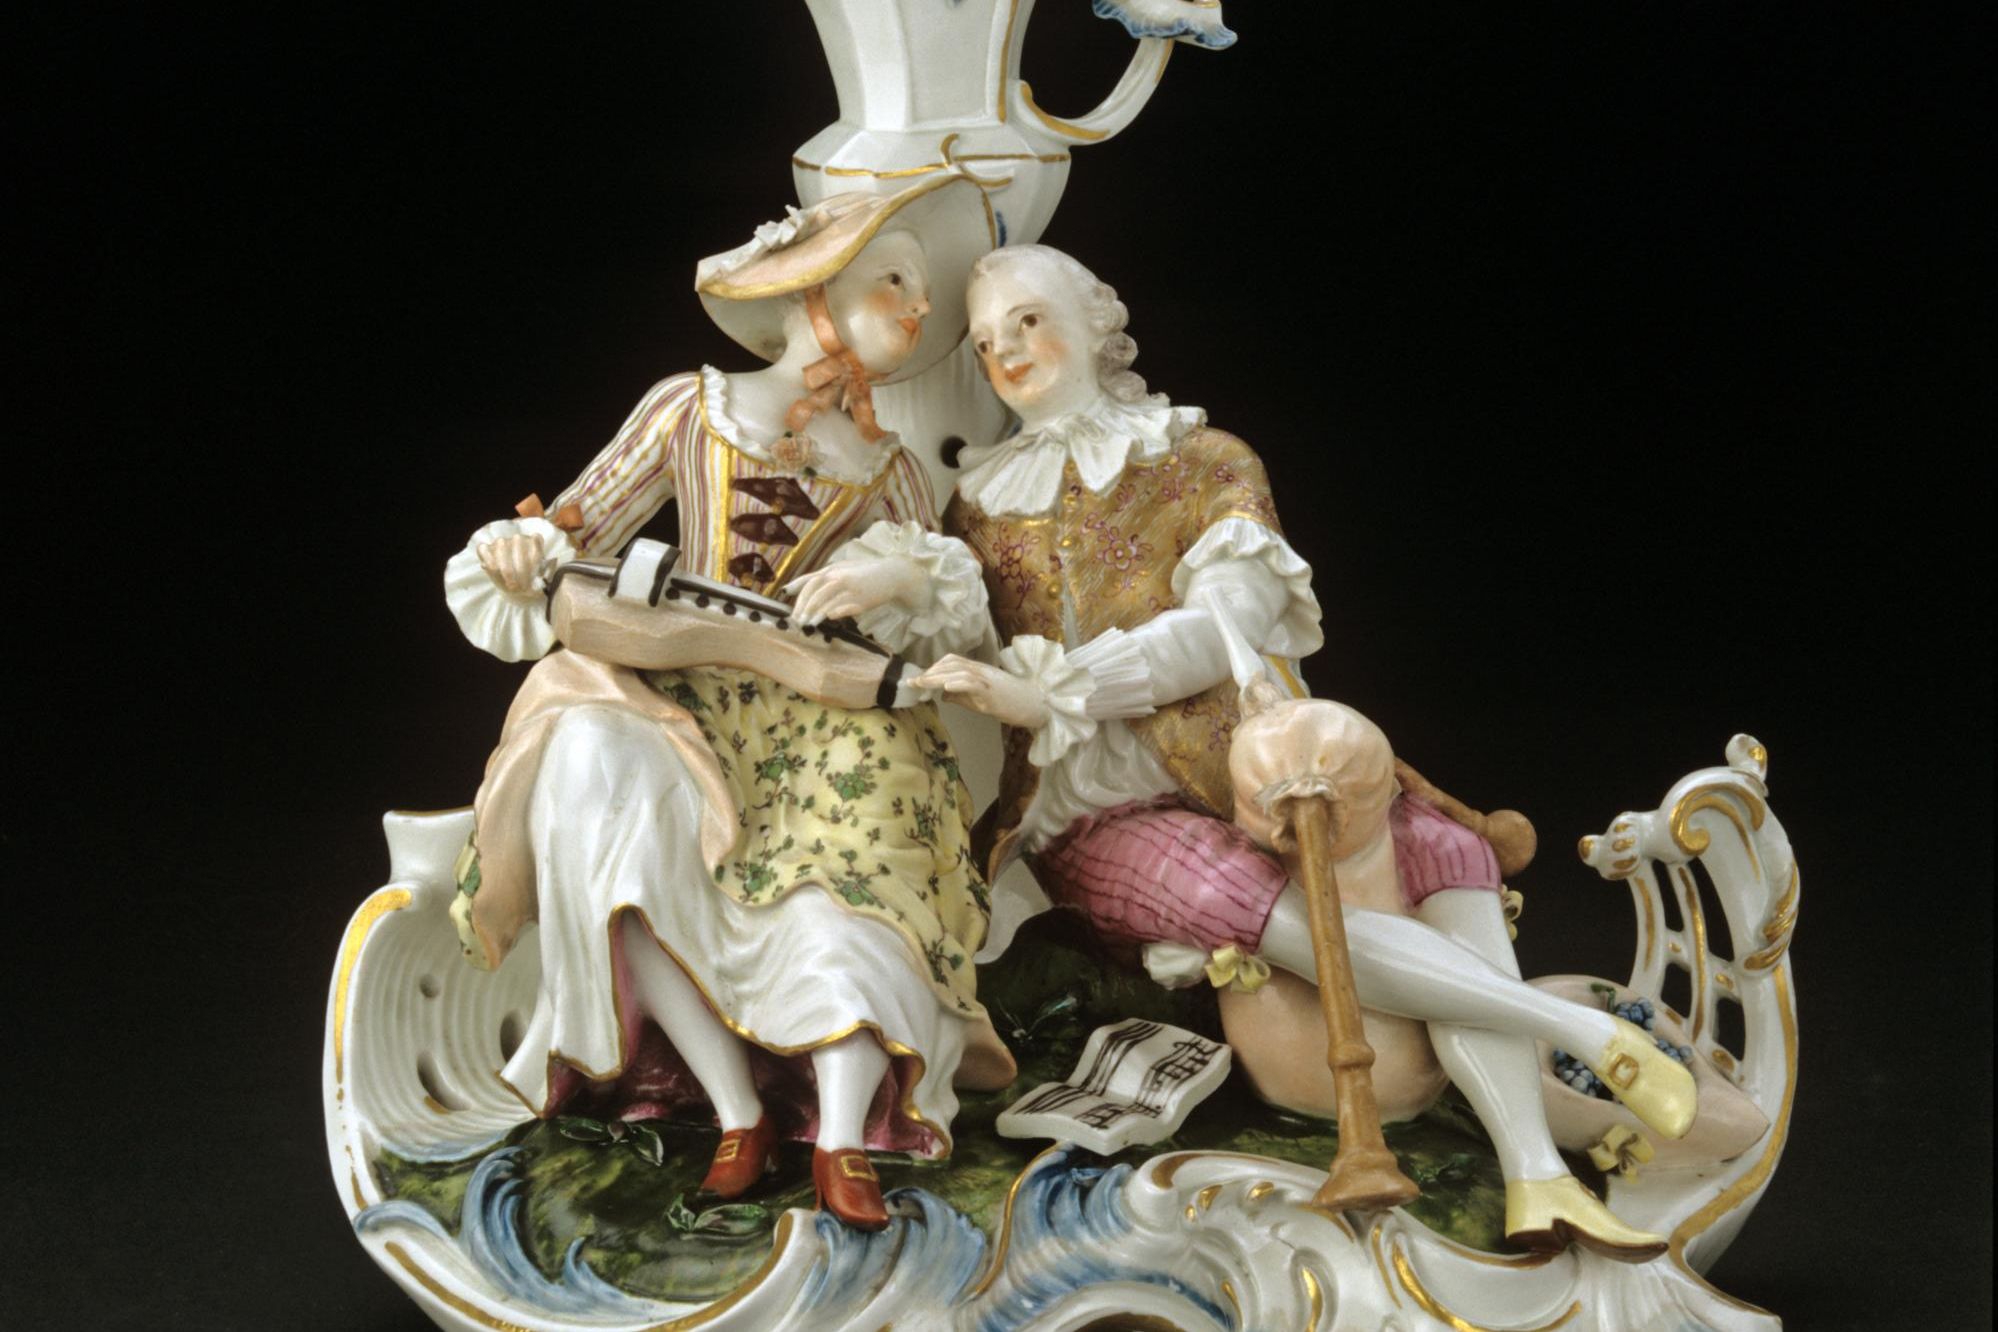 Musizierendes Liebespaar vor Duftvase, Porzellan, Frankenthal, 1758 / 1759 nach einem Modell von von Johann Friedrich Lück